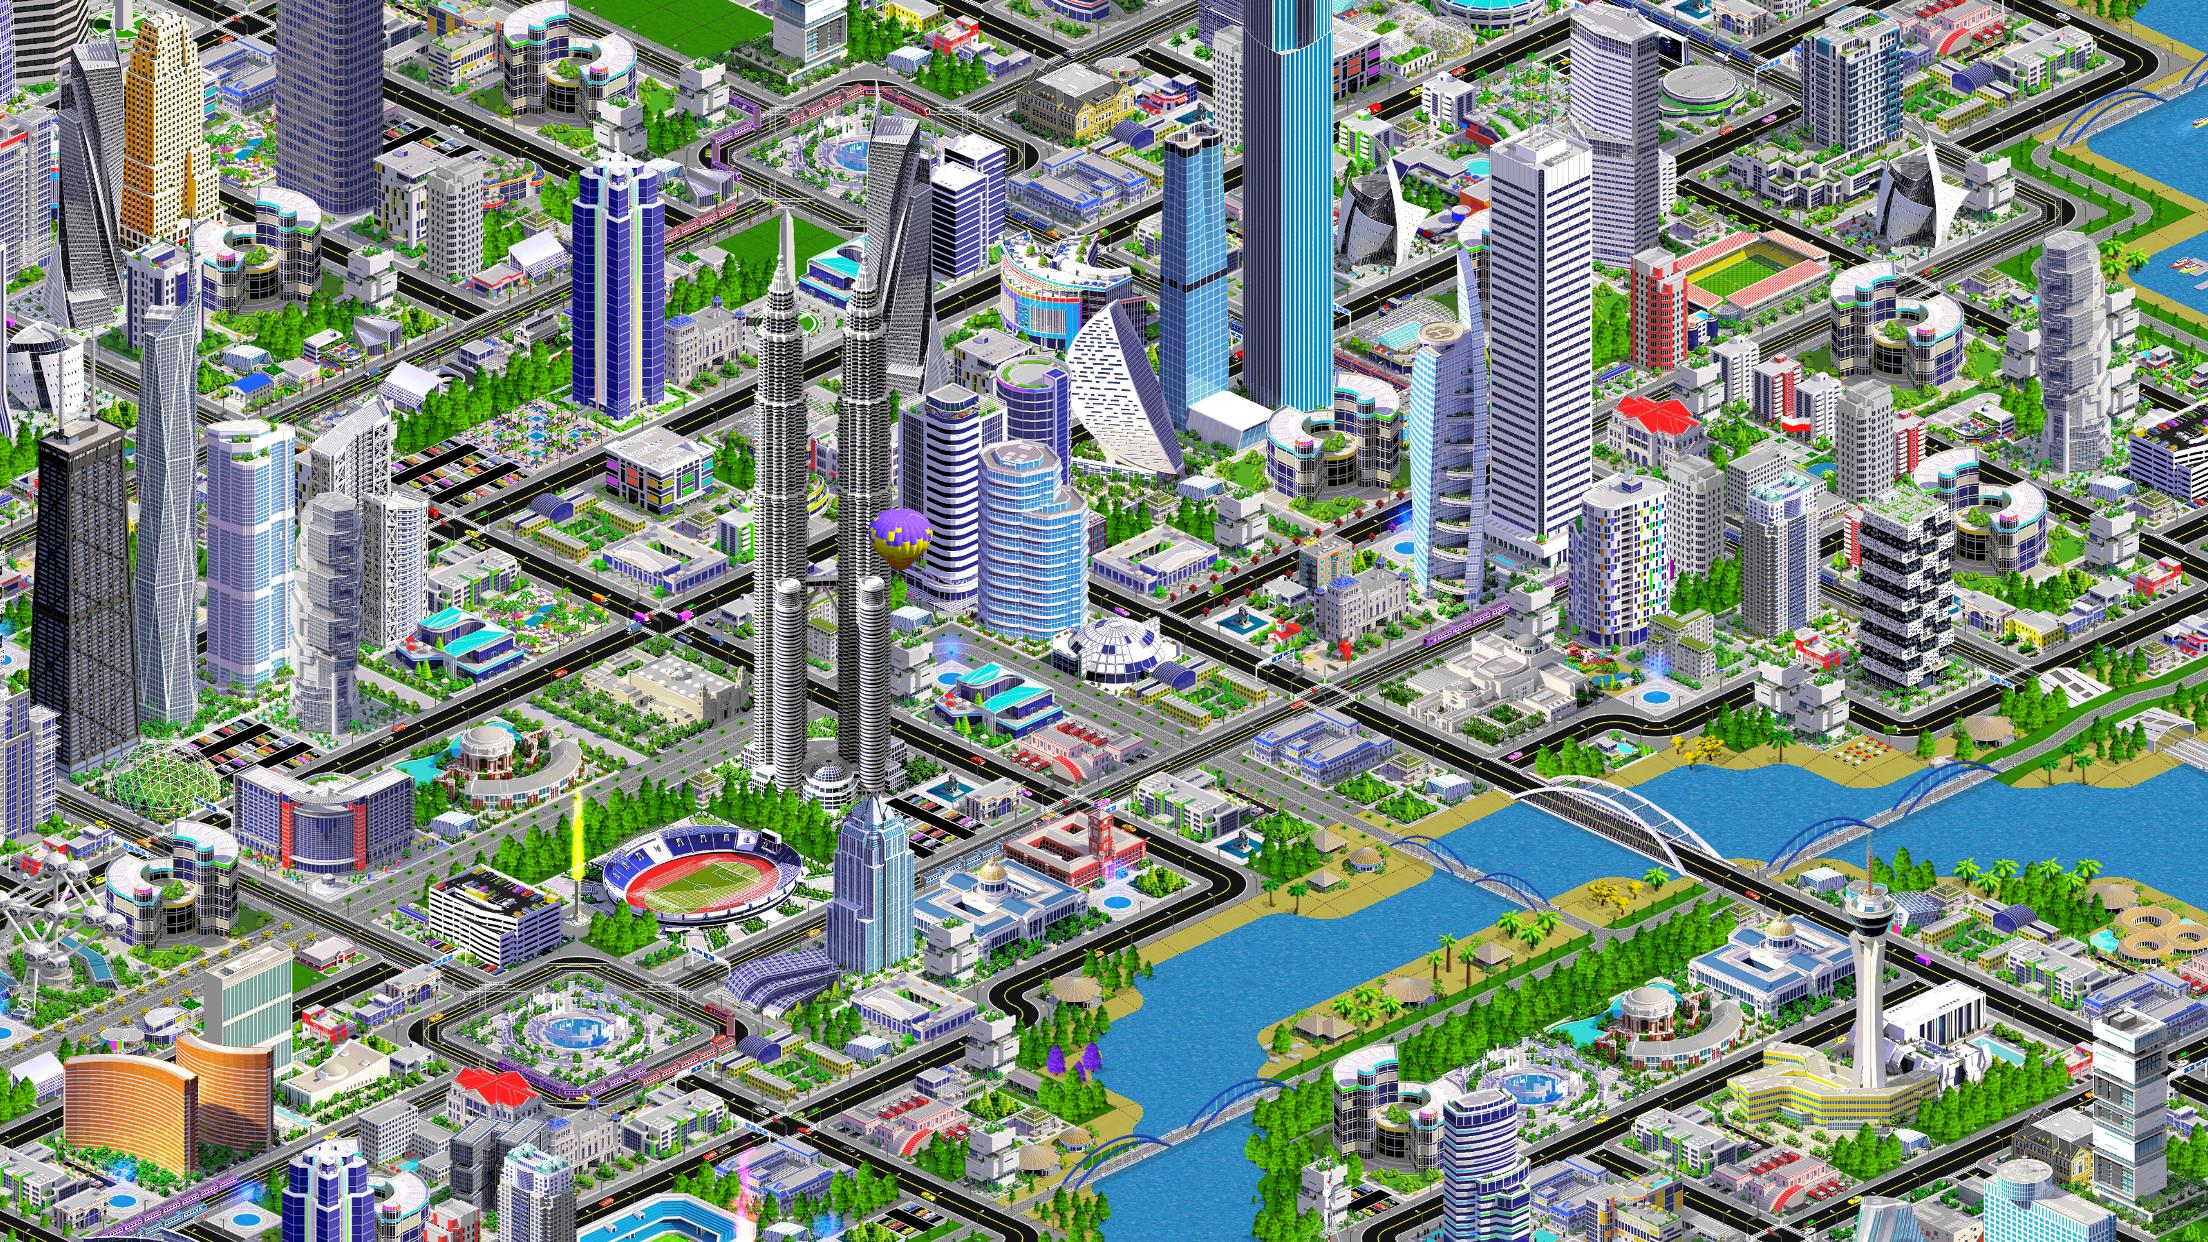 Building city игра. Designer City 2. Покет Сити 2 постройки для начинающих. City Level Design. Конструктор City building 8in1.